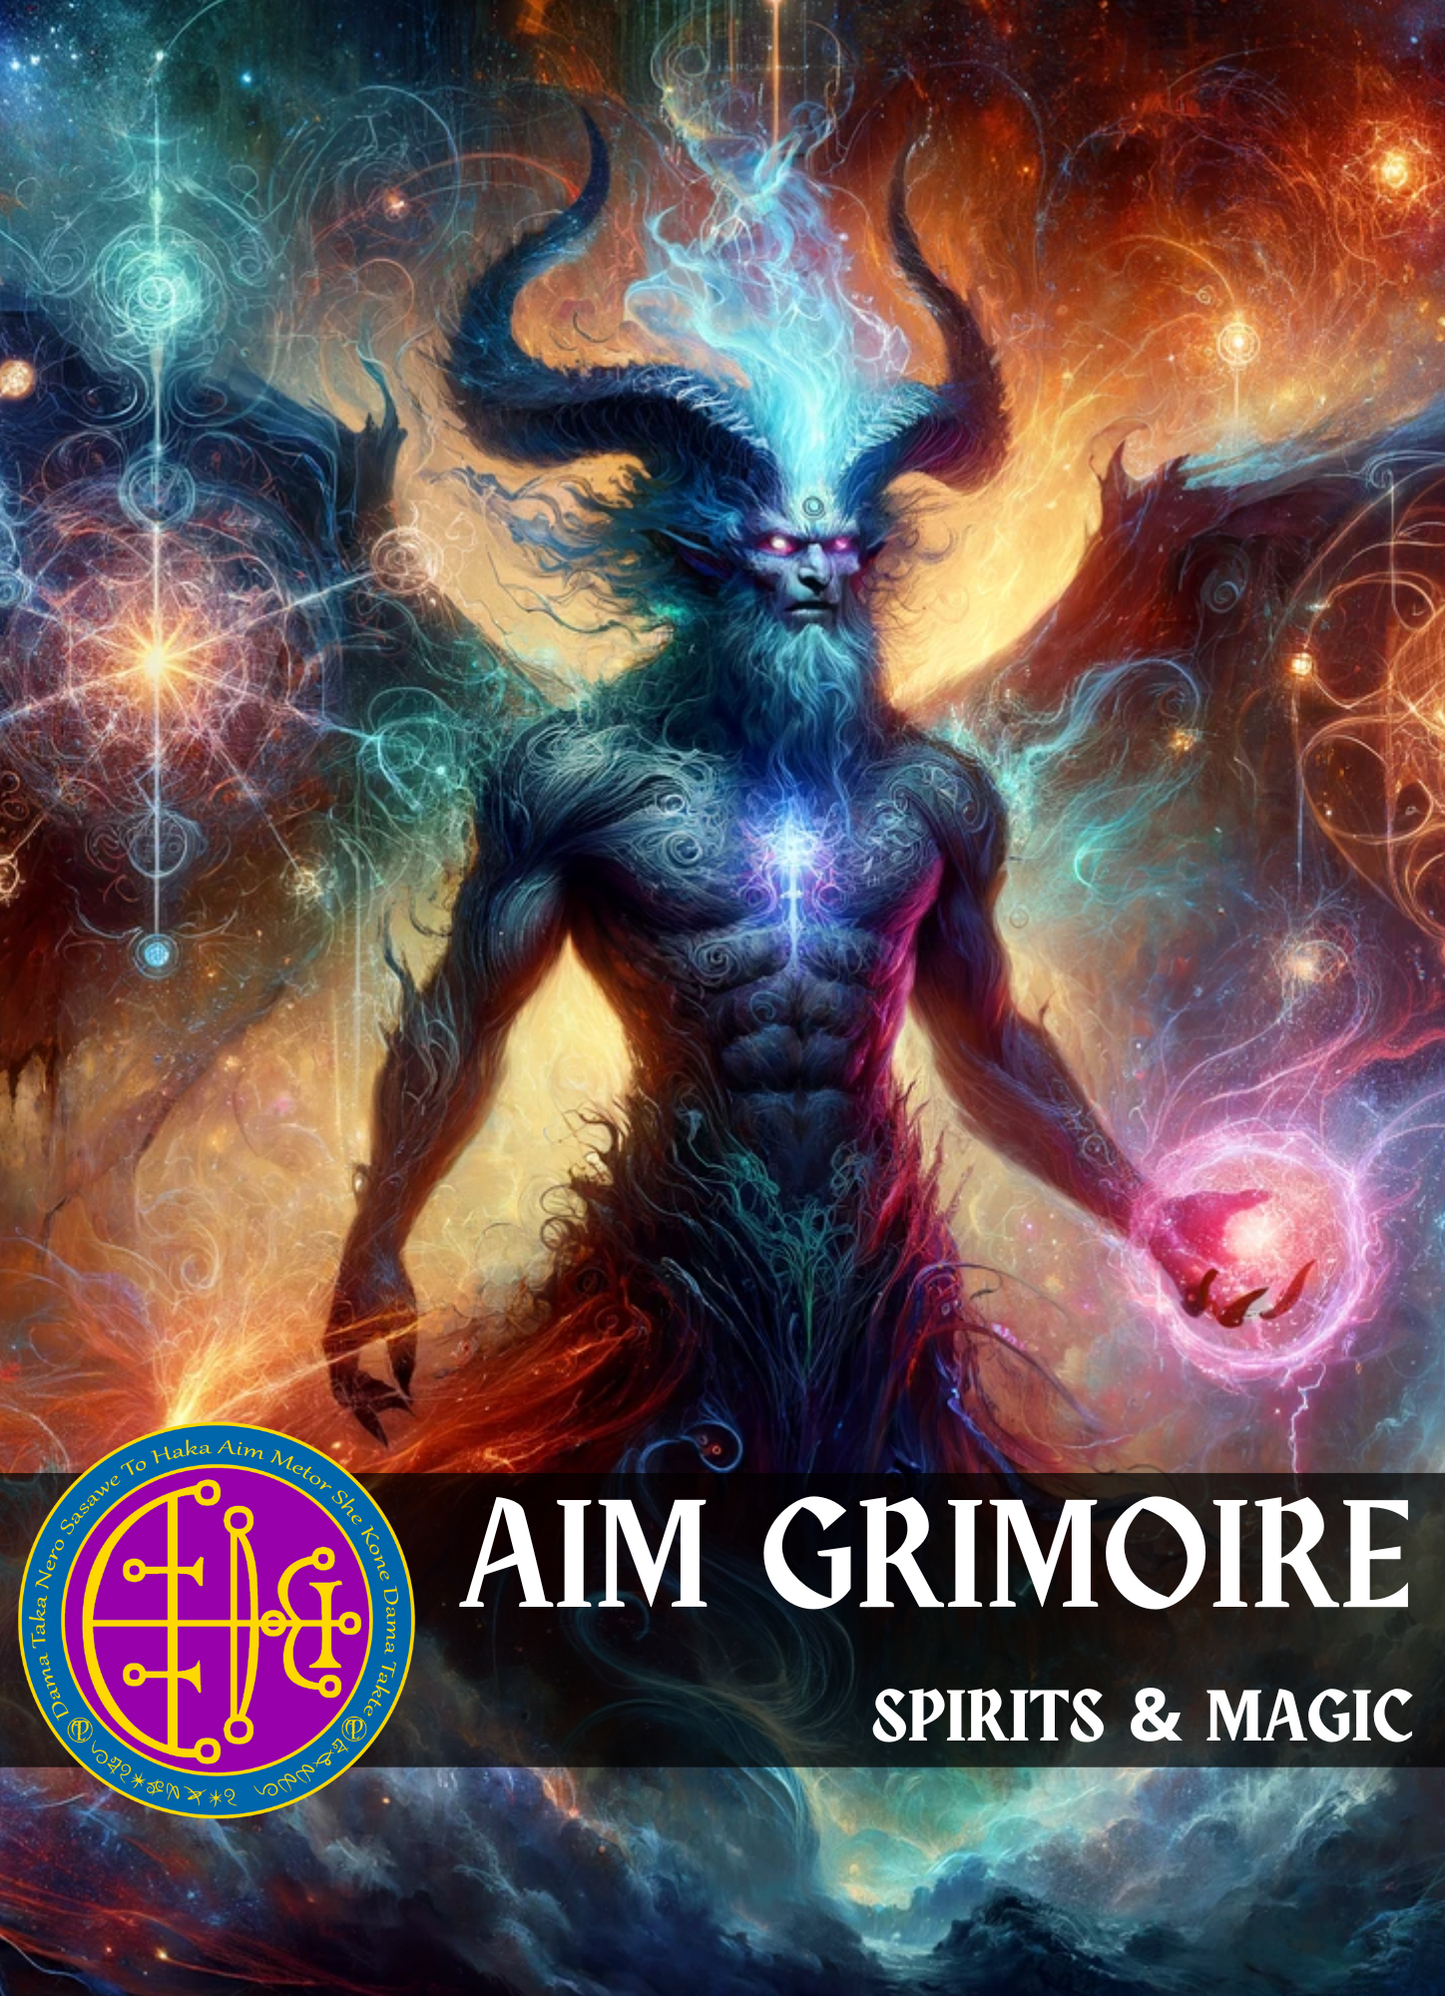 Grimoire of AIM අක්ෂර වින්‍යාසය සහ නිර්මාණශීලිත්වය සඳහා චාරිත්‍ර - නව ව්‍යාපෘති - කරුණාව - චමත්කාරය - අභ්‍යන්තර ප්‍රතිභාව - ඔබව සවිබල ගැන්වීම සඳහා අවහිරතා ඉවත් කිරීම - Abraxas Amulets ® Magic ♾️ Talisman ♾️ ආරම්භ කිරීම්